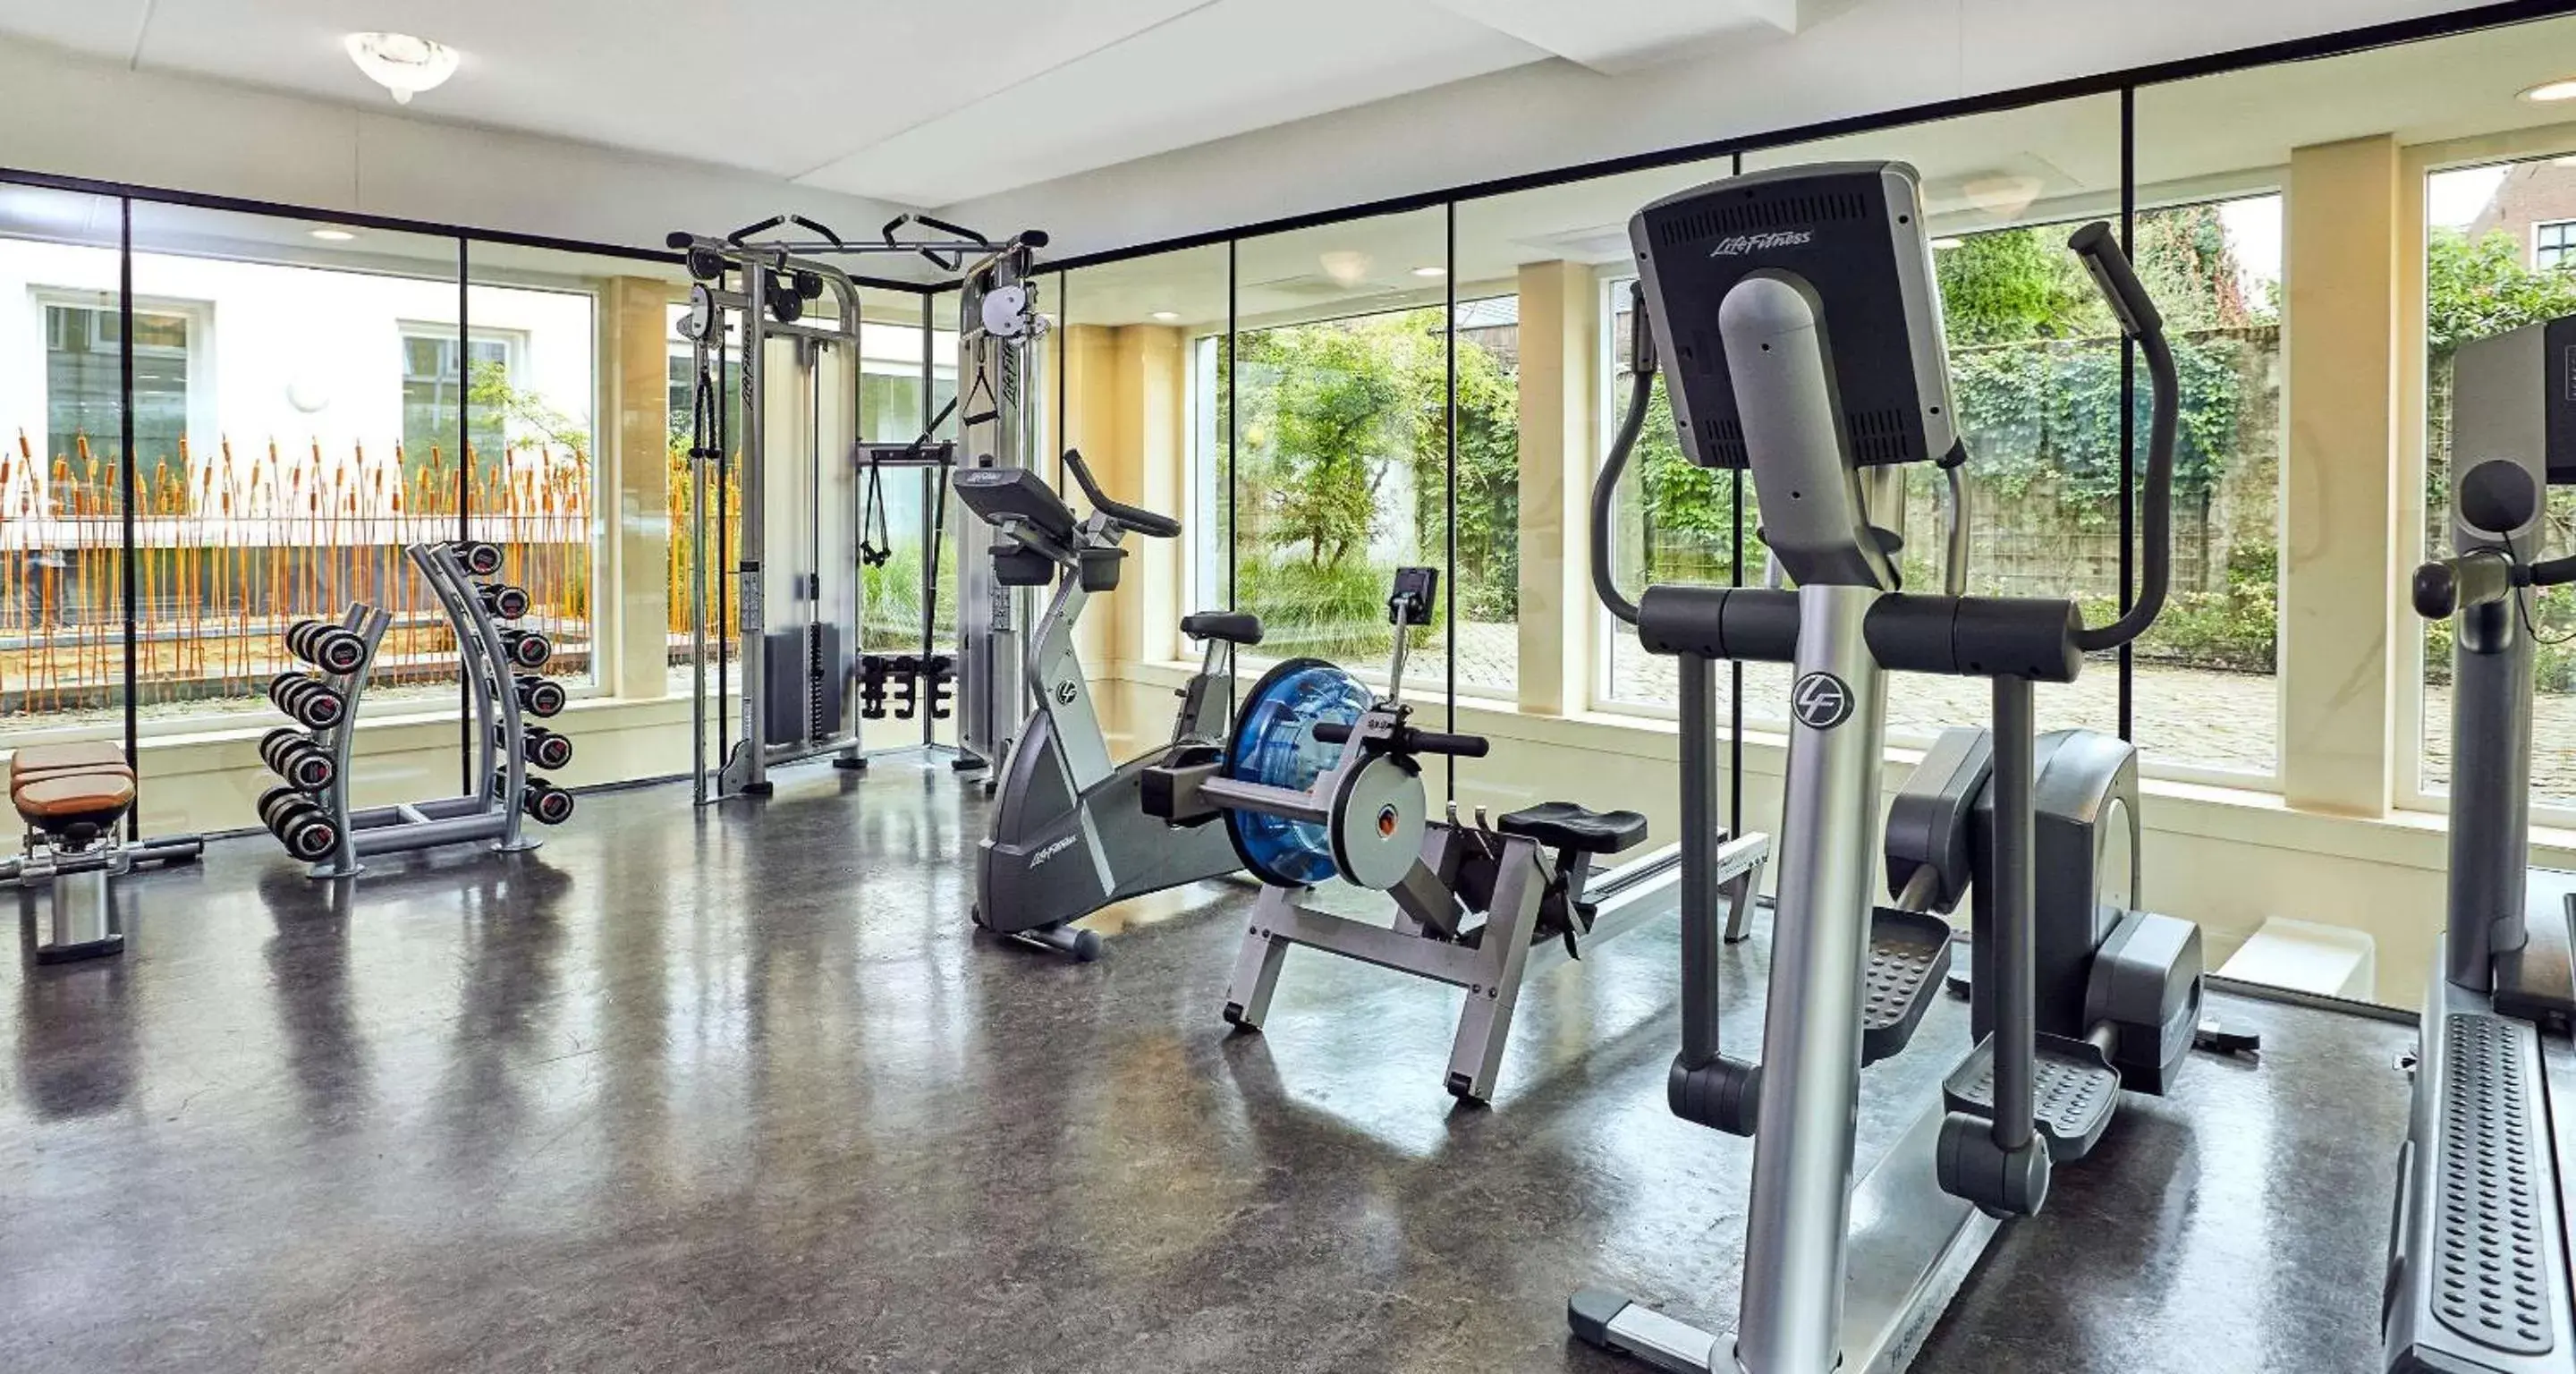 Fitness centre/facilities, Fitness Center/Facilities in Grand Hotel Karel V